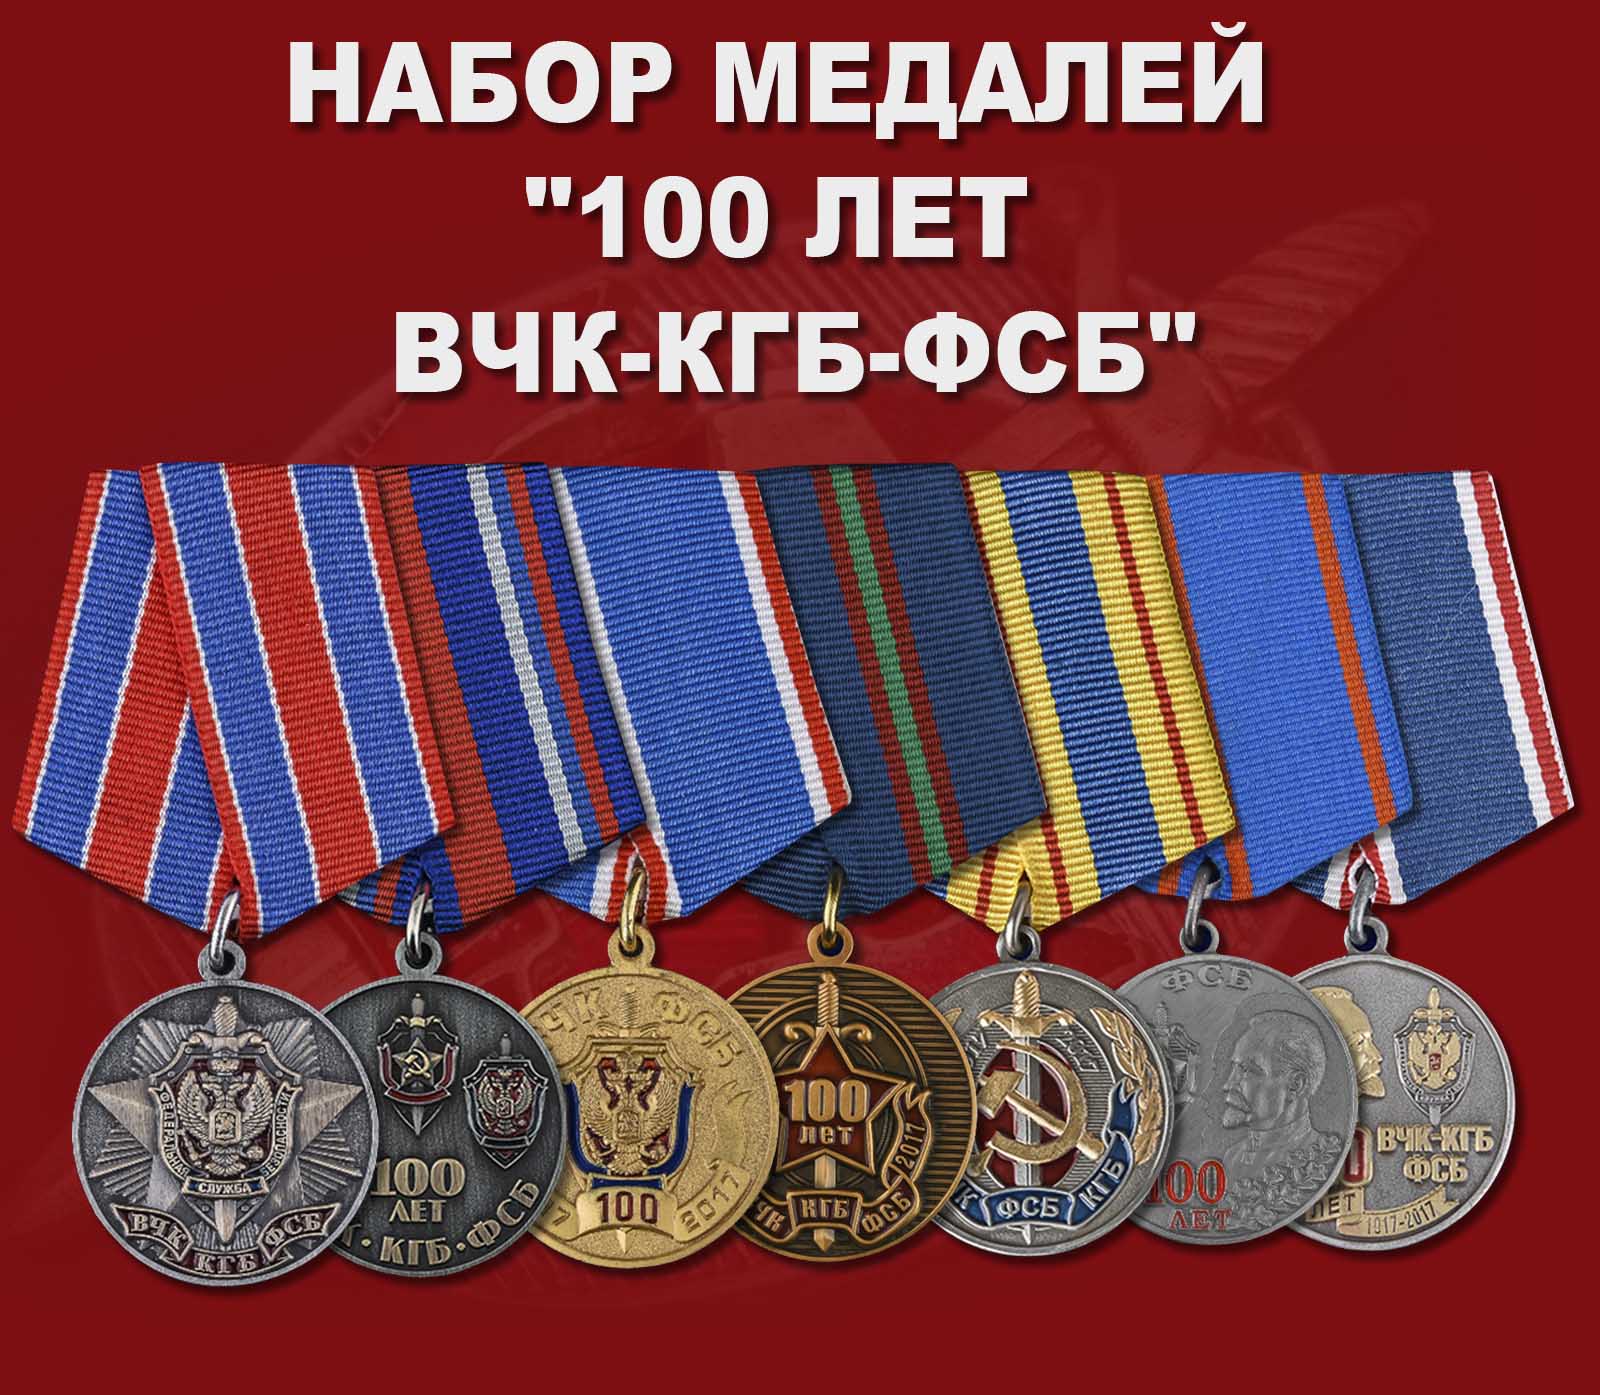 Купить набор медалей "100 лет ВЧК-КГБ-ФСБ"